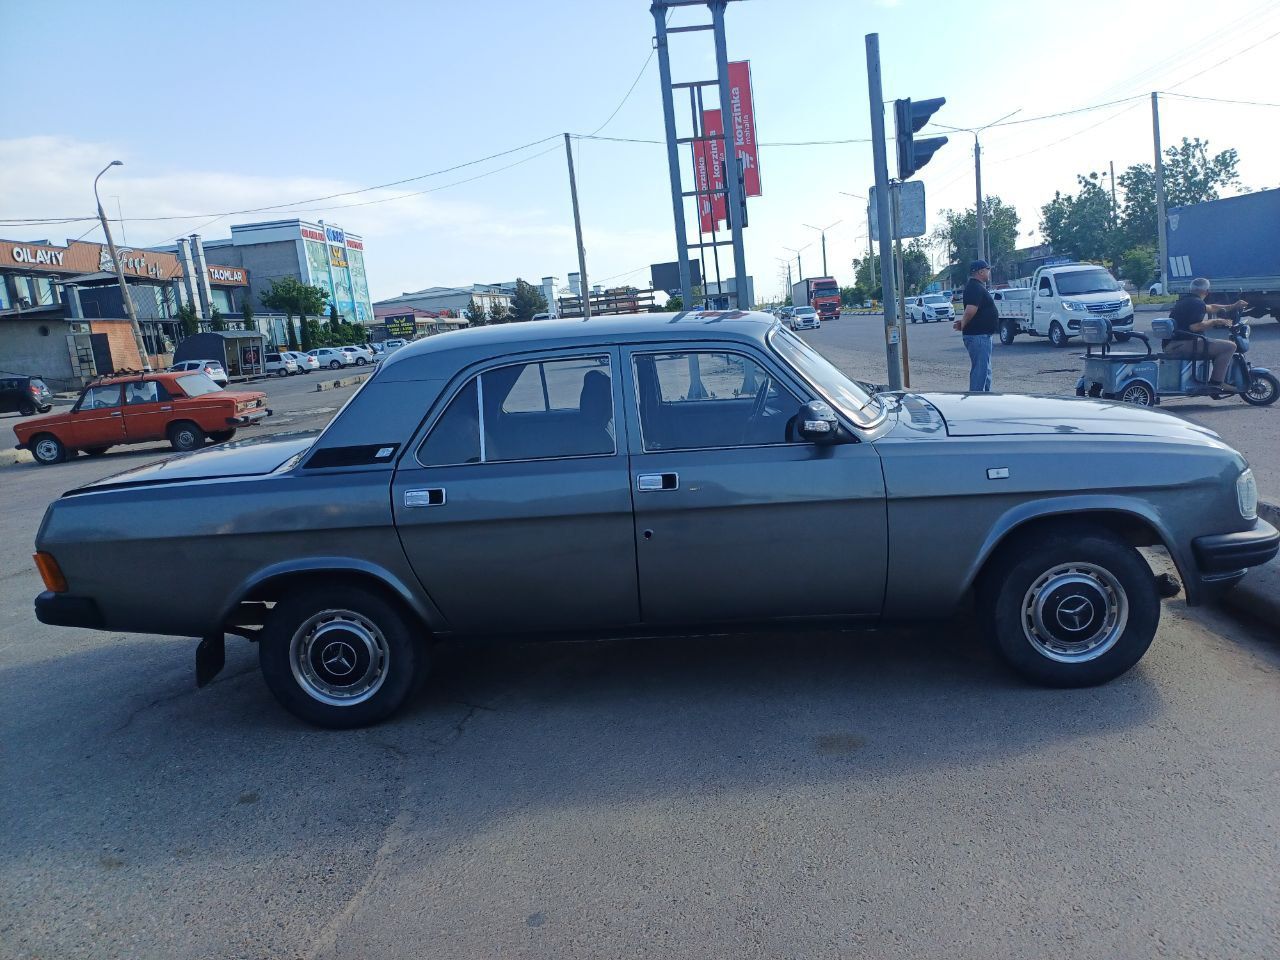 Volga_31 29 narxi_1800$